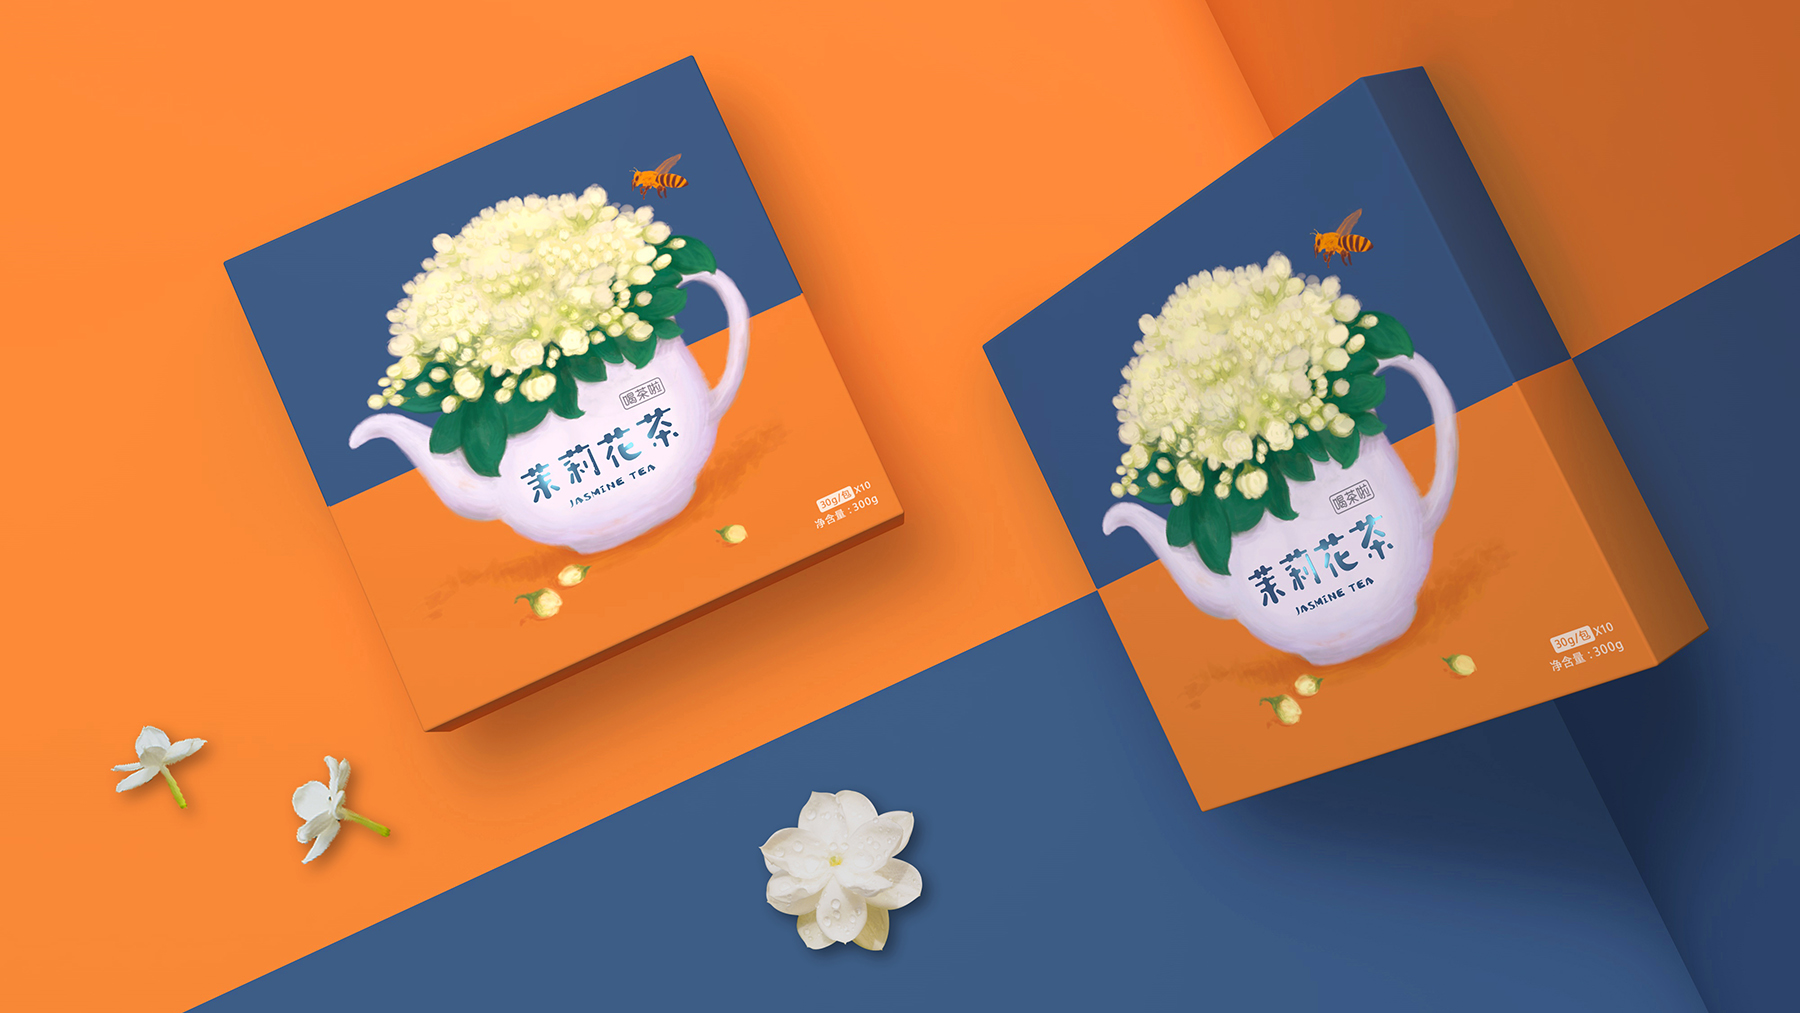 喝茶啦-系列花茶包装设计 手绘花茶包装设计 花茶包装设计哪家好 花茶包装设计公司 第7张